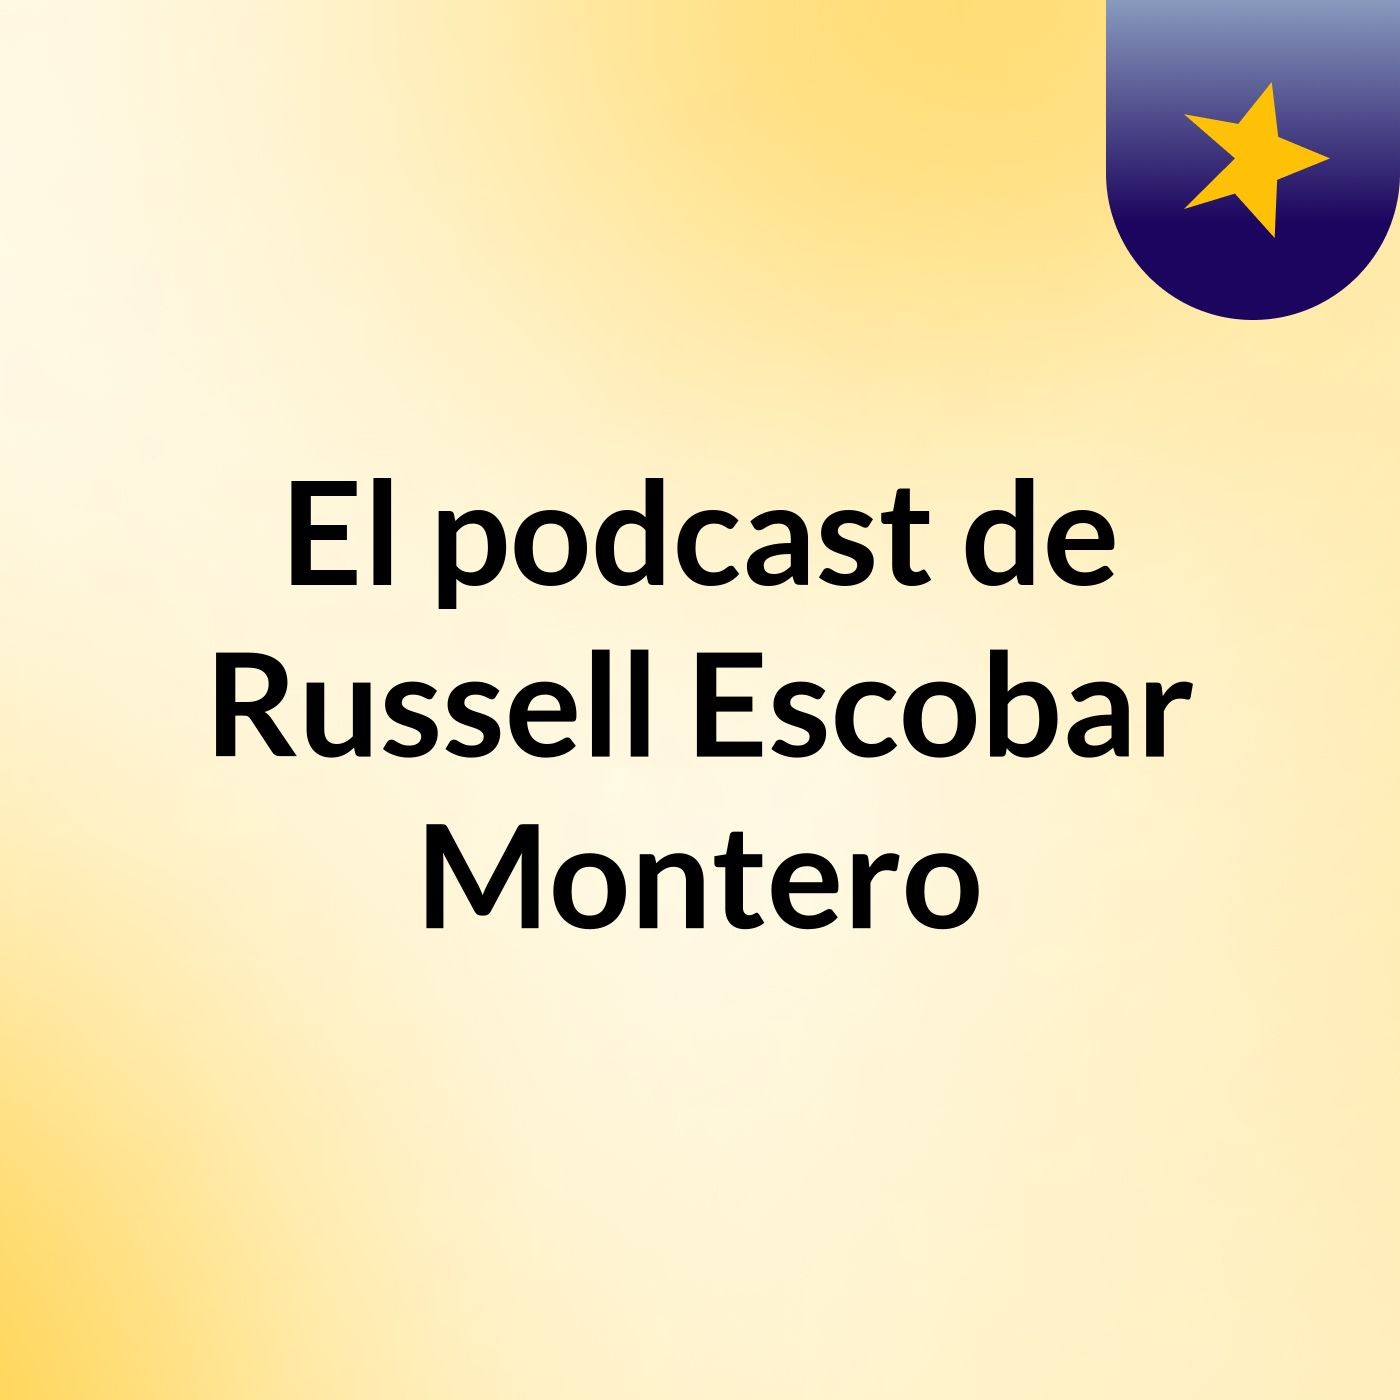 El podcast de Russell Escobar Montero